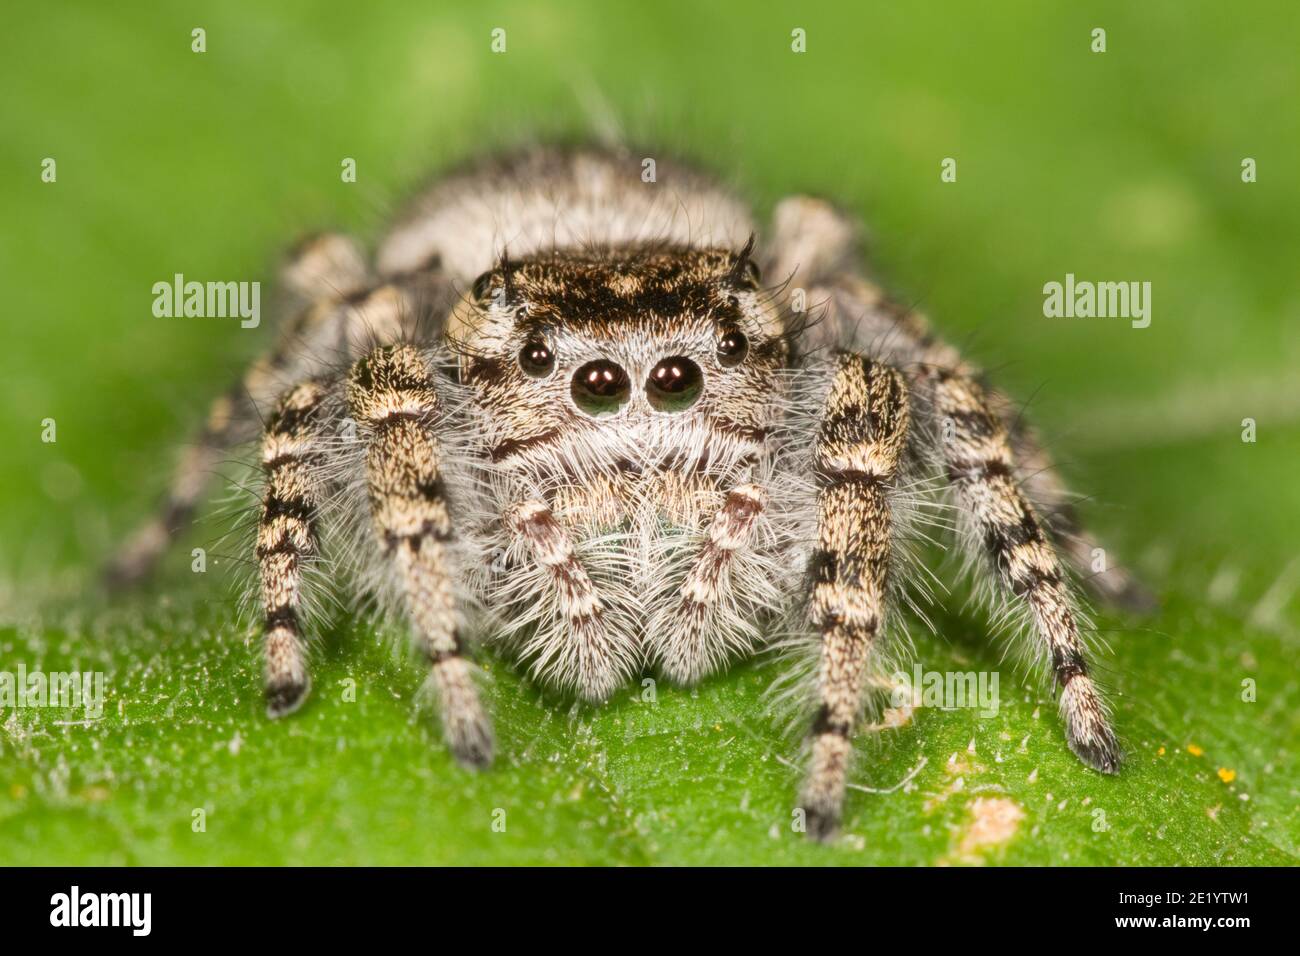 Jumping Spider, Phidippus asotus, Salticidae. Stock Photo